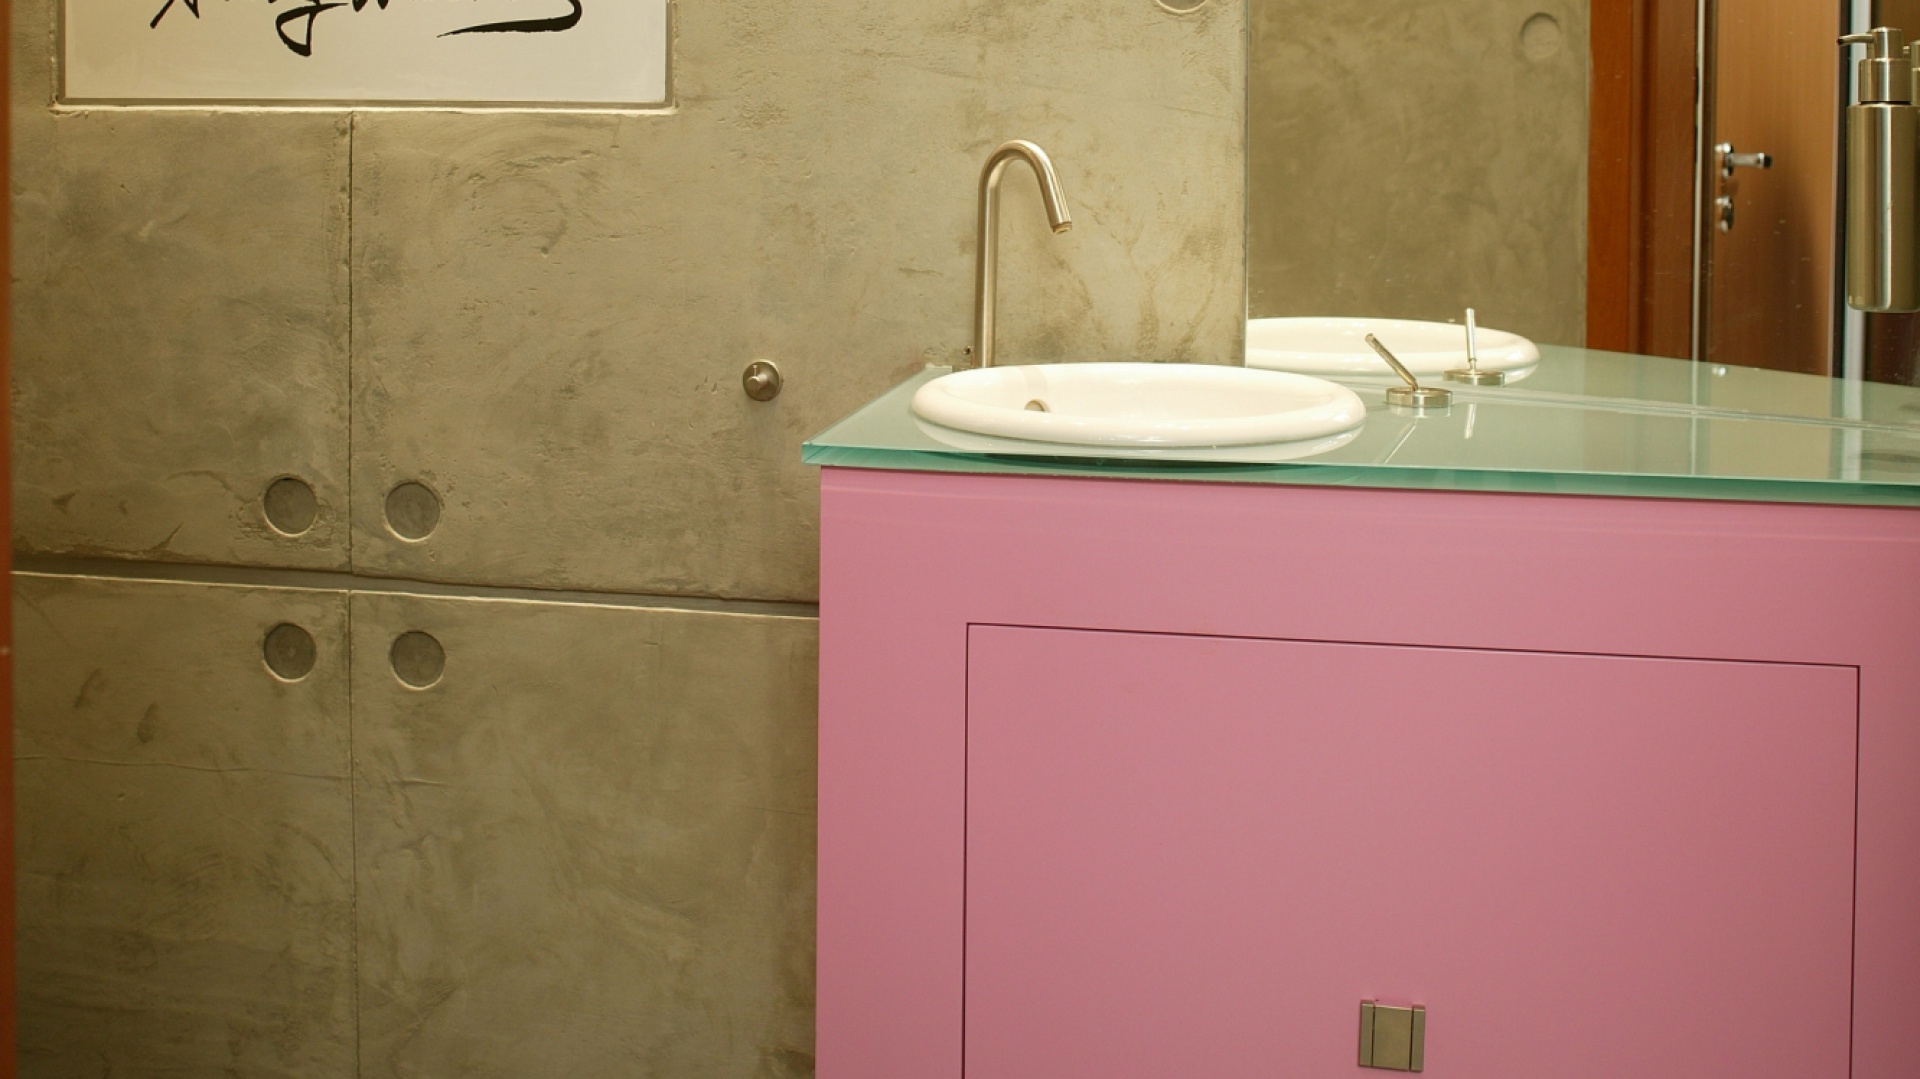 Toaleta dla gości: Marilyn Monroe i betonowe płyty